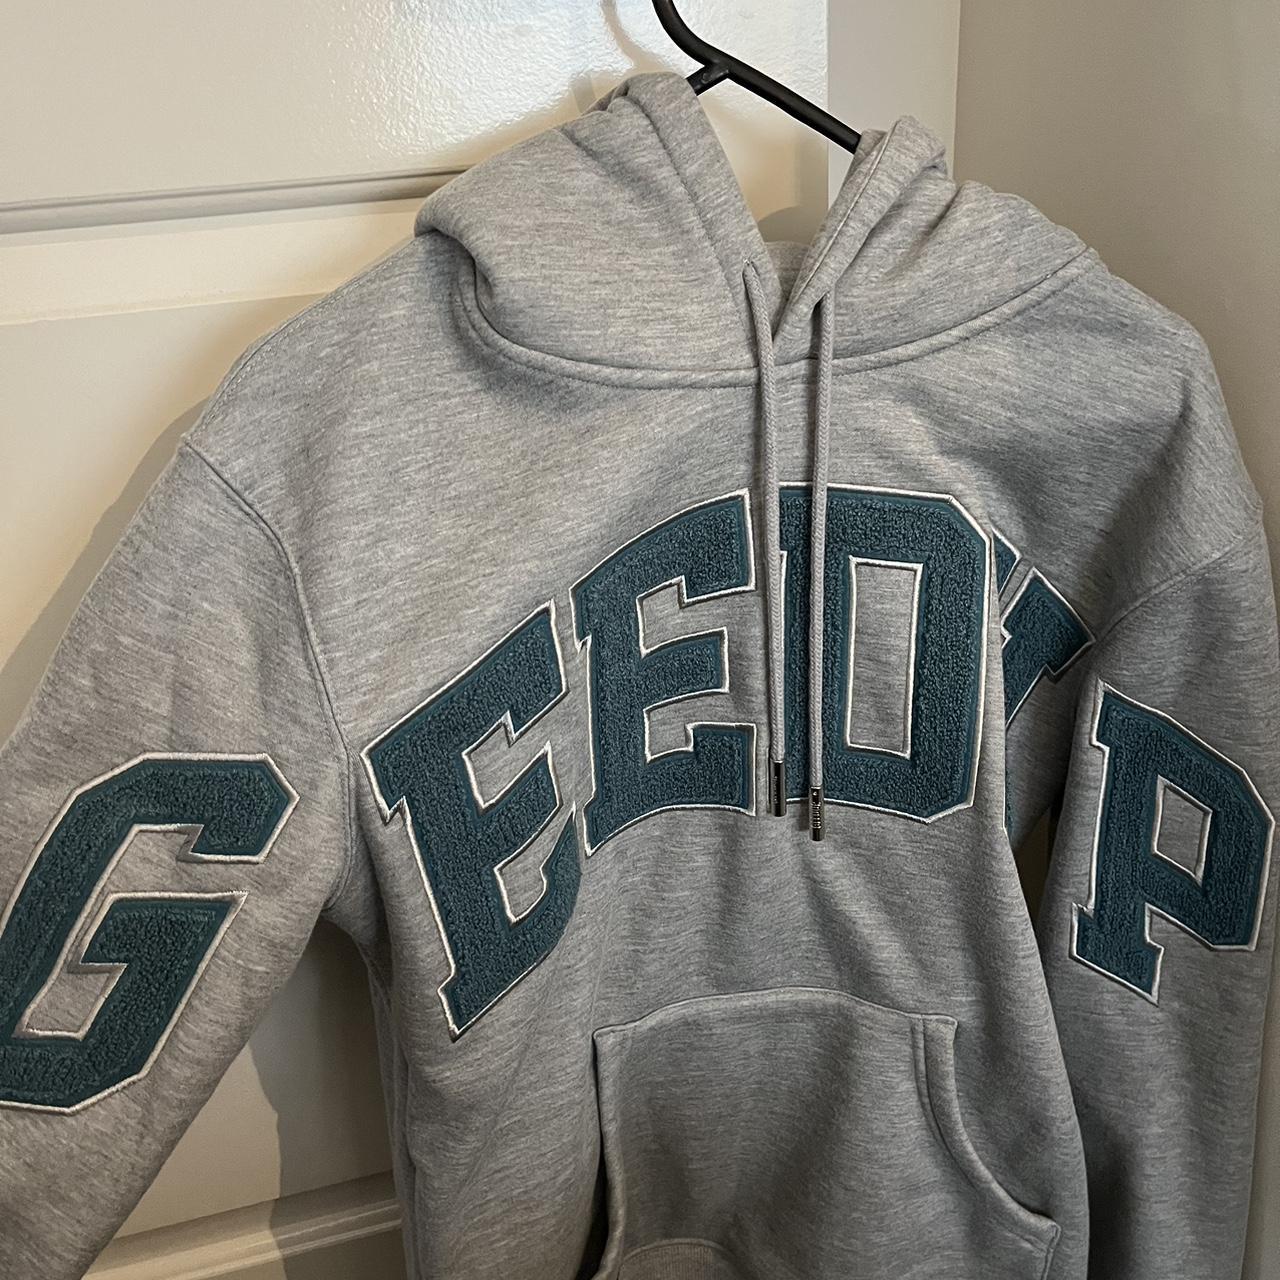 Brand new Grey & Aqua Green GEEDUP jumper in size S... - Depop